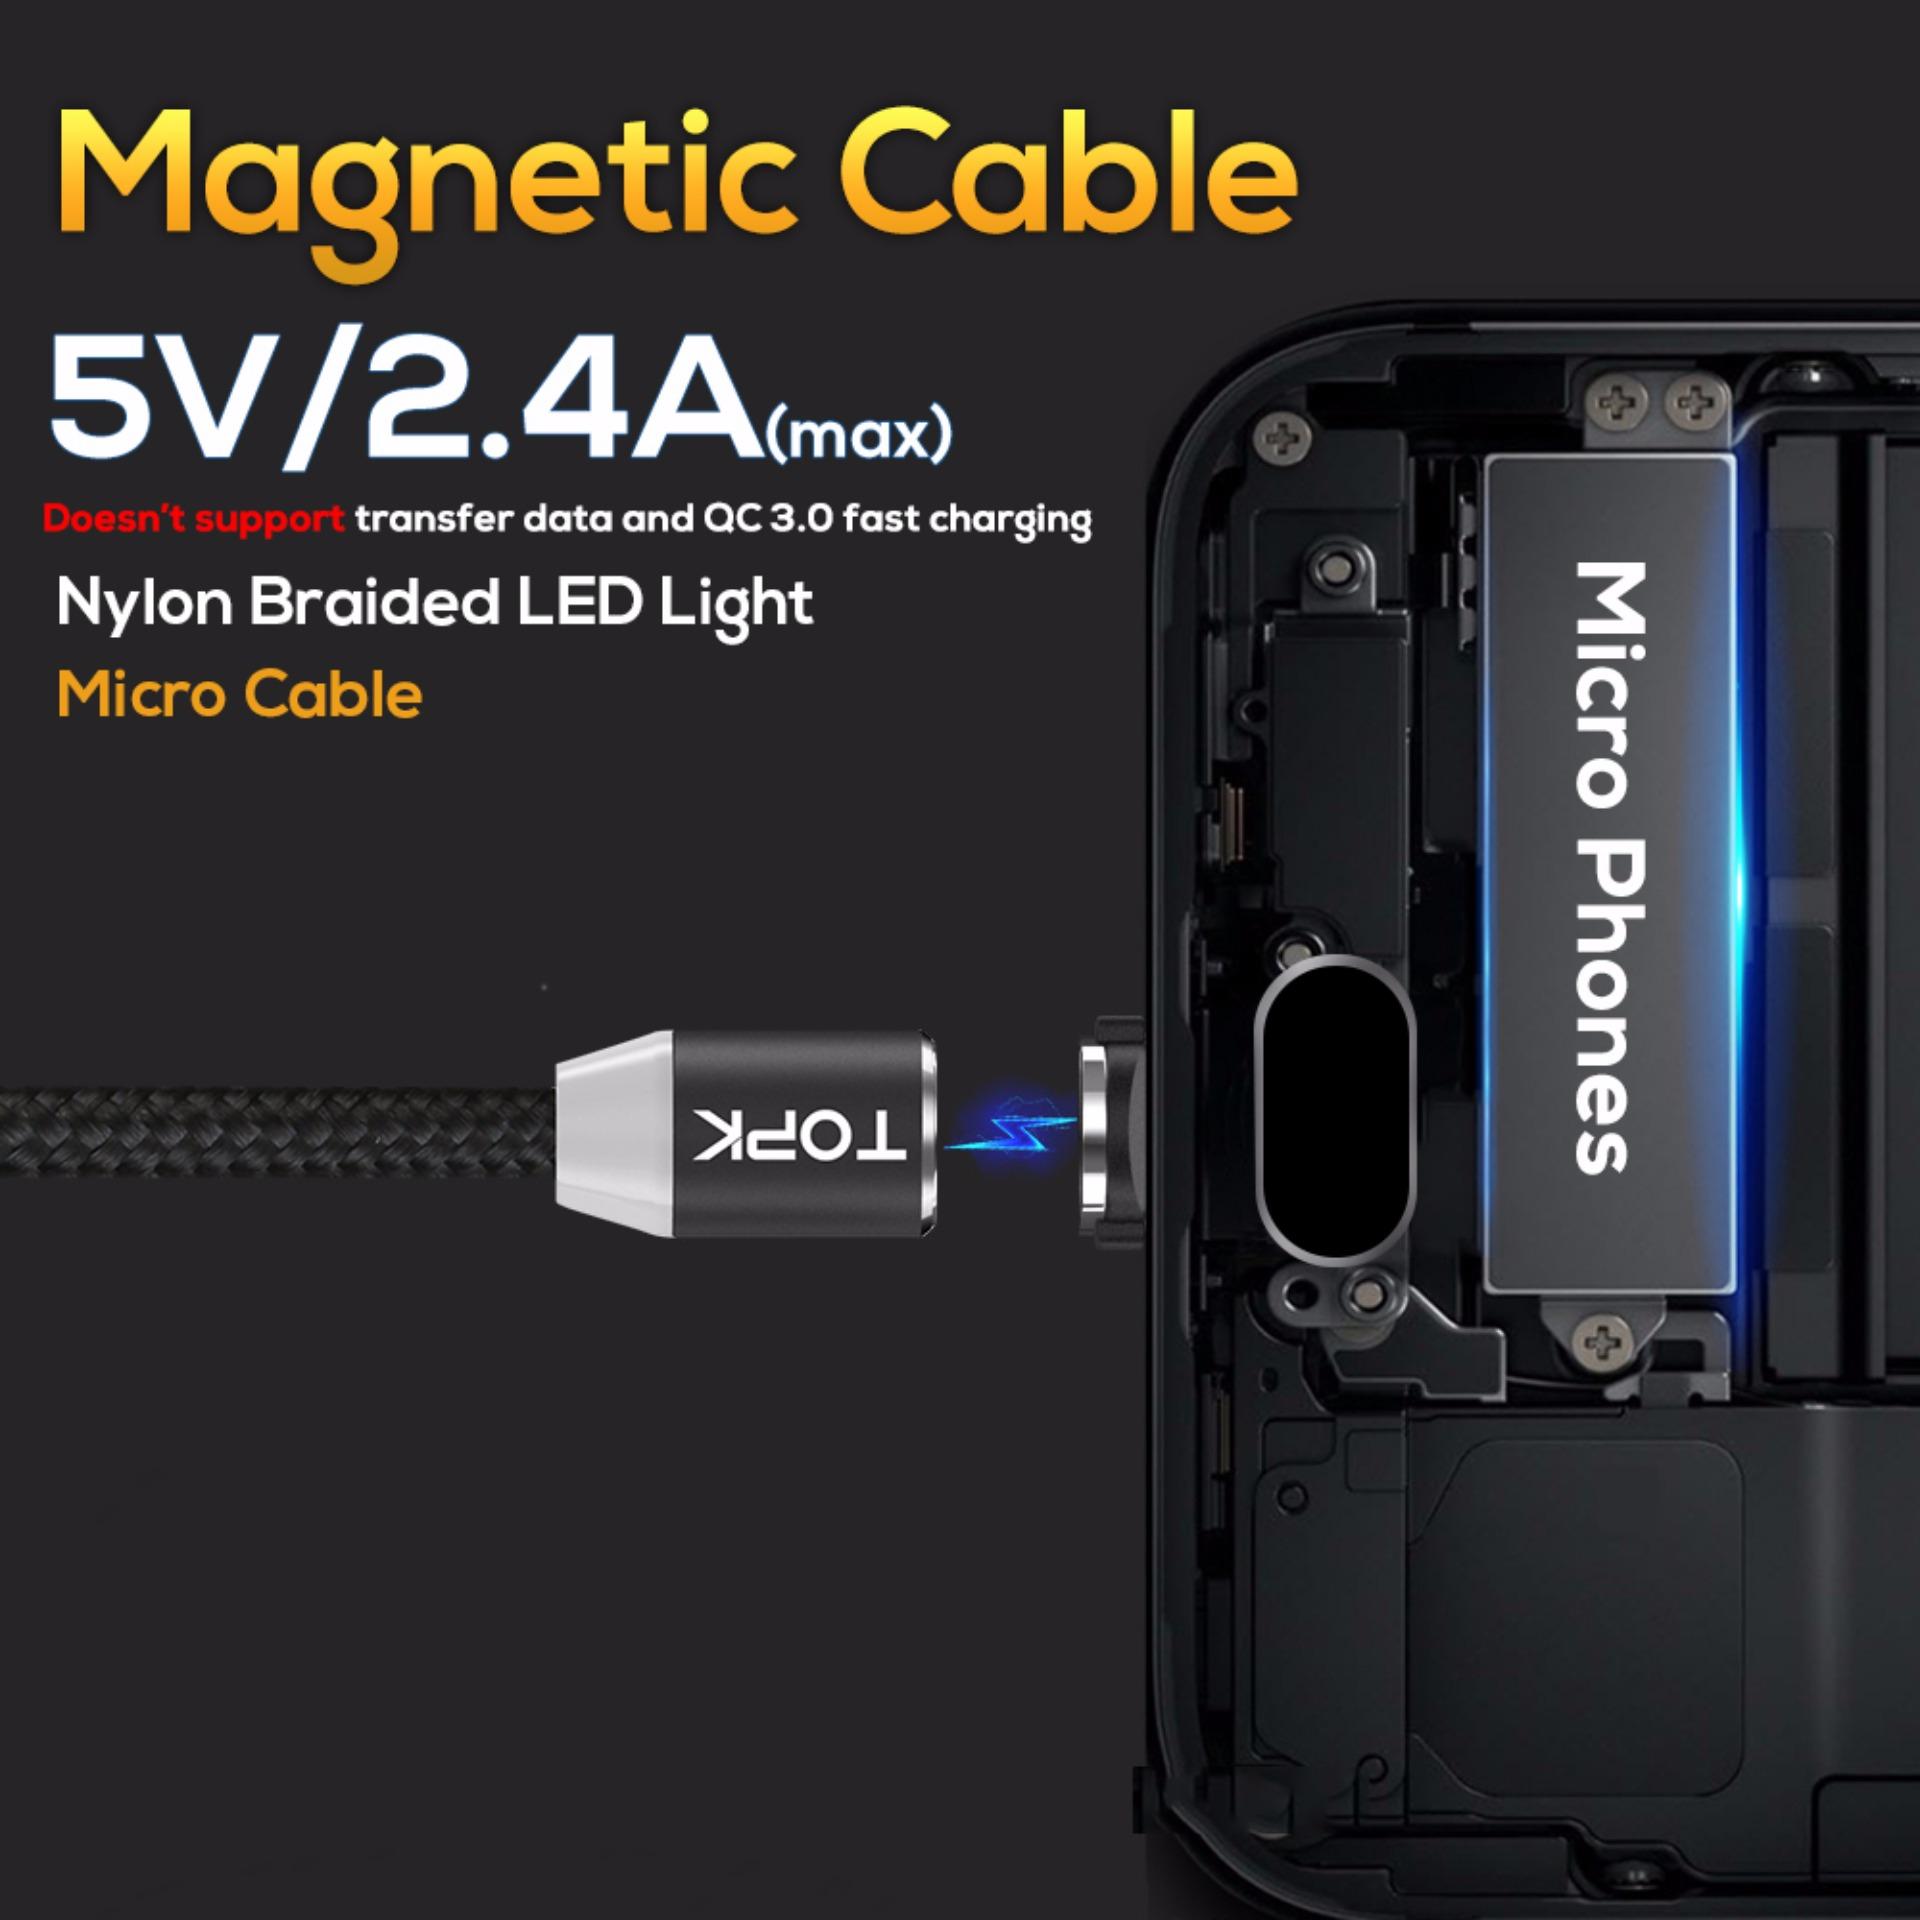 Cáp sạc nam châm TOPK AM23 3 trong 1 có đèn LED chất liệu dây bện nylon dành cho iPhone Xiaomi Samsung OPPO kích thước - Hàng chính hãng